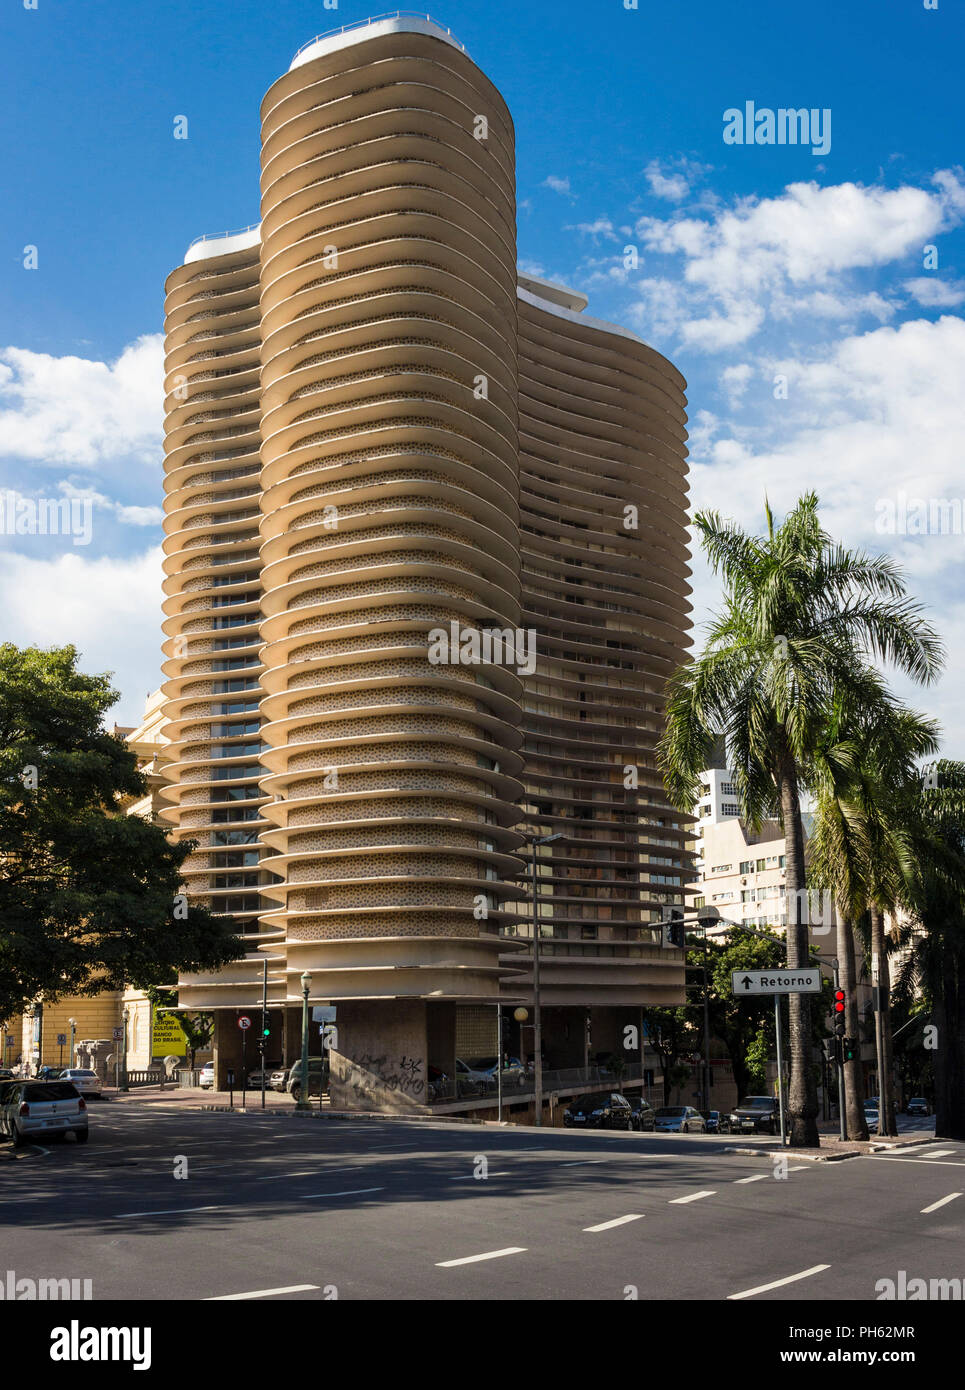 Edificio Niemeyer, en la ciudad de Belo Horizonte, Brasil - Diseñado por el arquitecto Oscar Niemeyer. Foto de stock